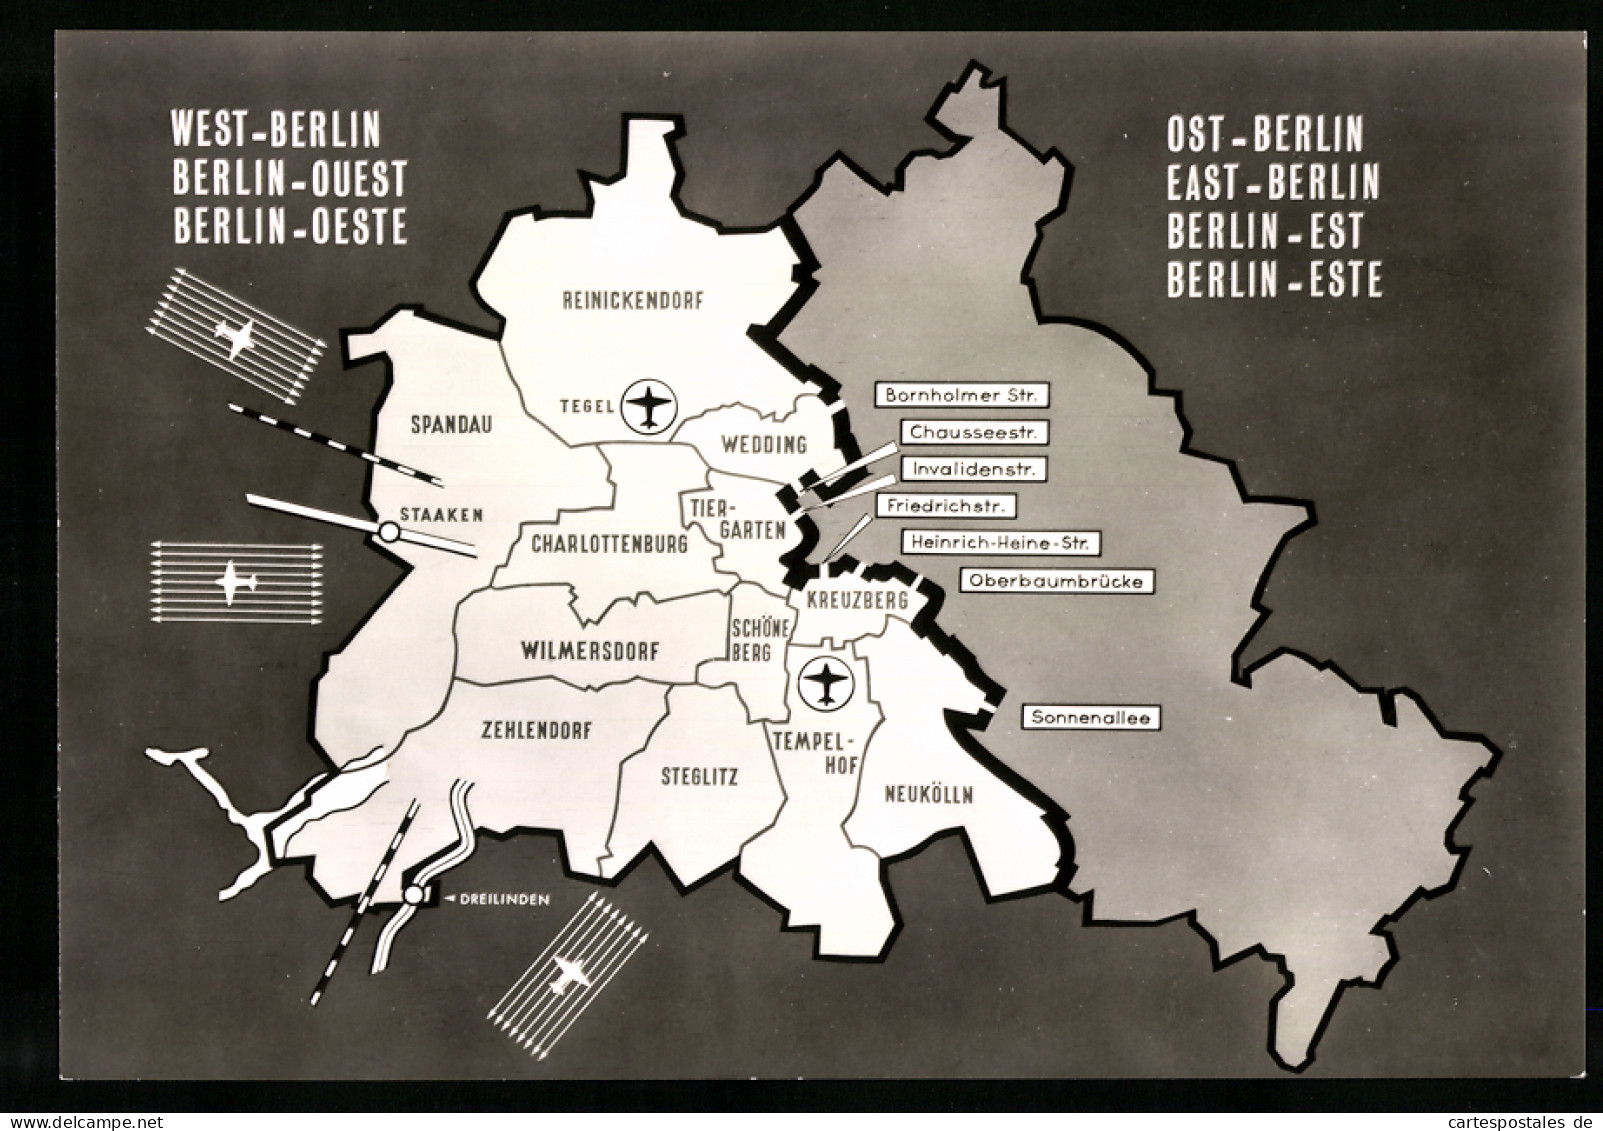 30 Fotografien unbekannter Fotograf, Ansicht Berlin, Berliner Mauer, Zonengrenze, Sektorengrenze, Treptower Strasse uv 